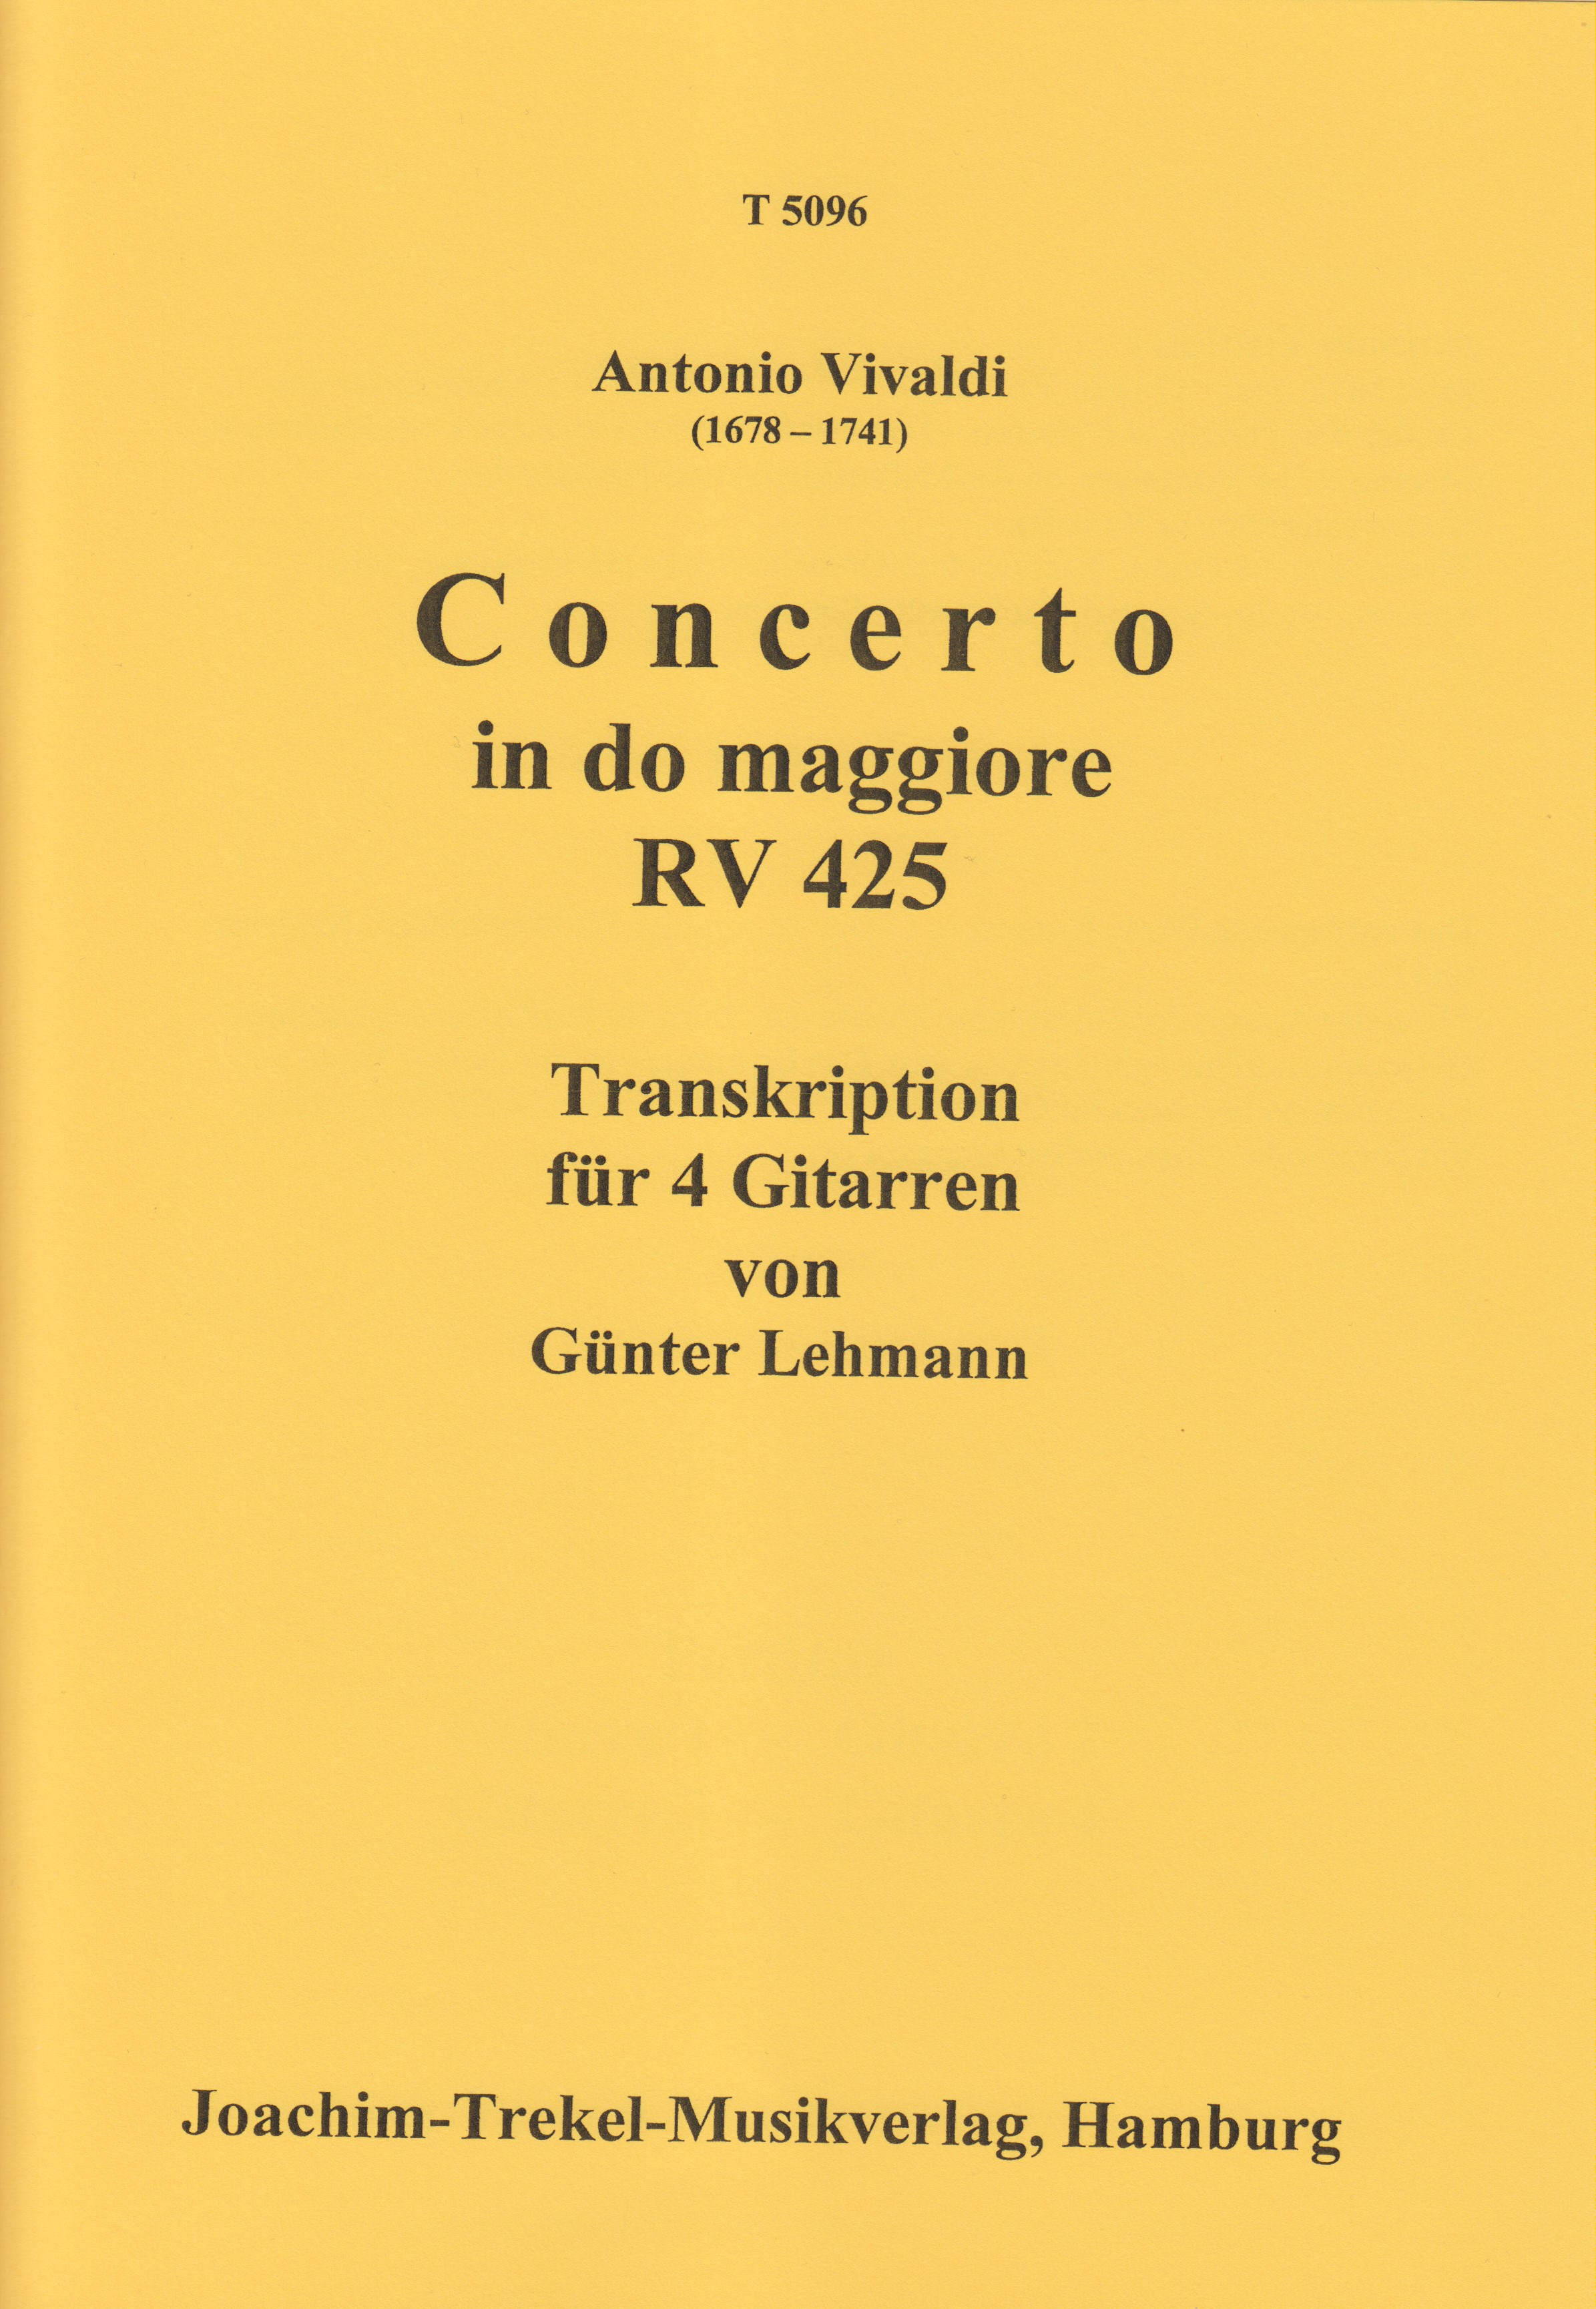 Concerto in do maggiore RV 425